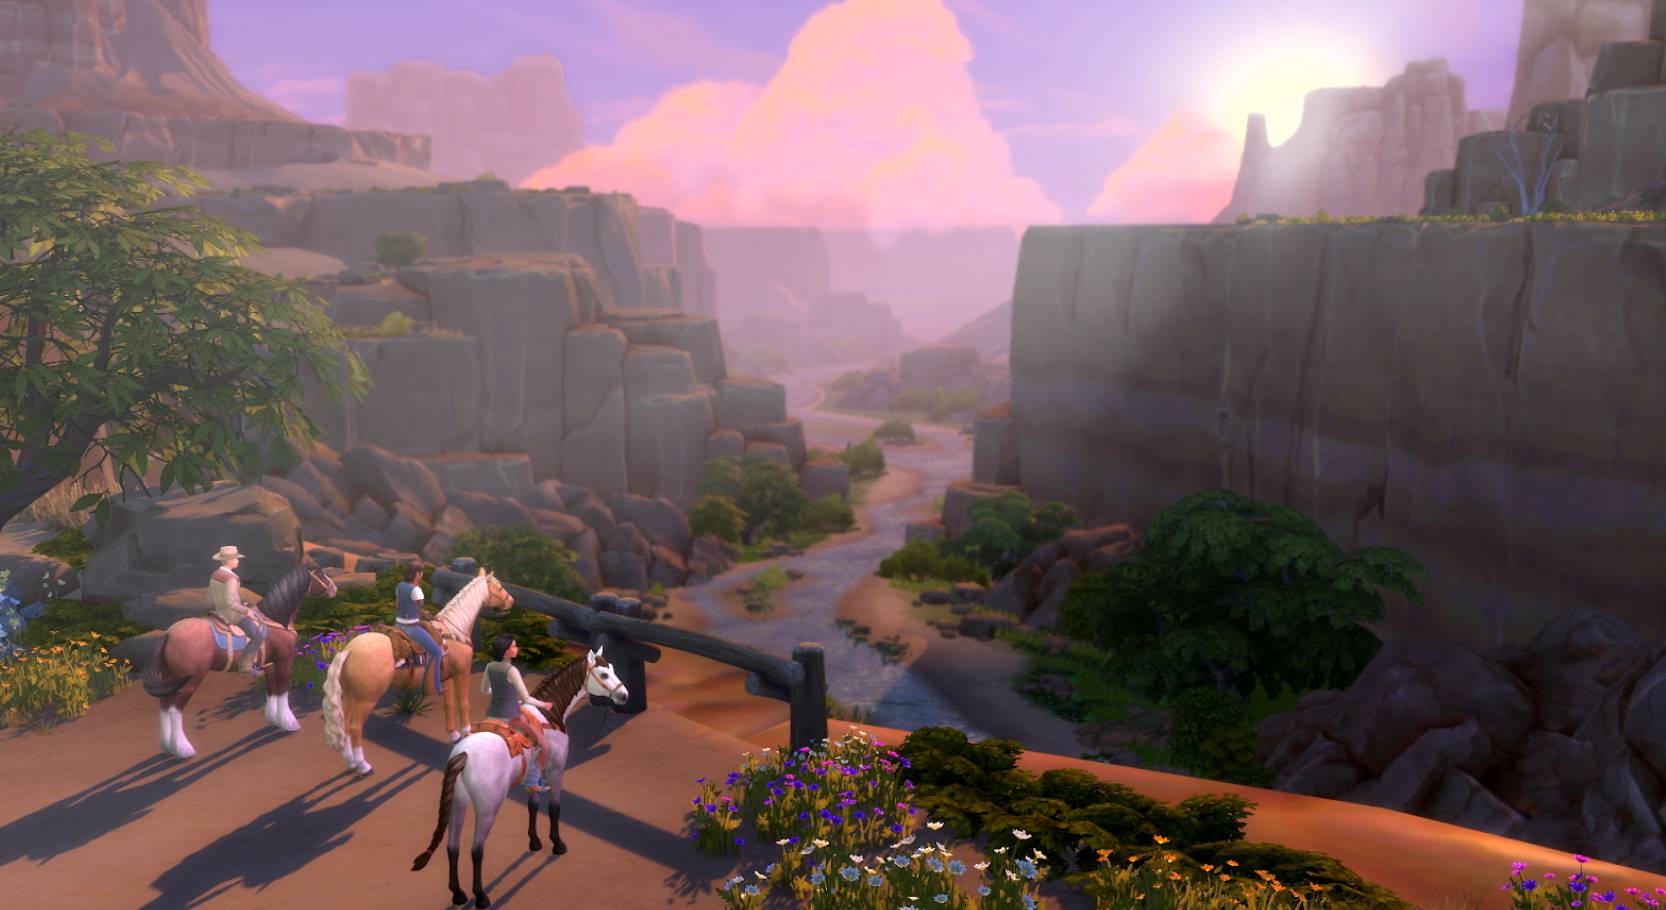 Pacchetto espansione Vita nel Ranch di The Sims 4, disponibile da ora